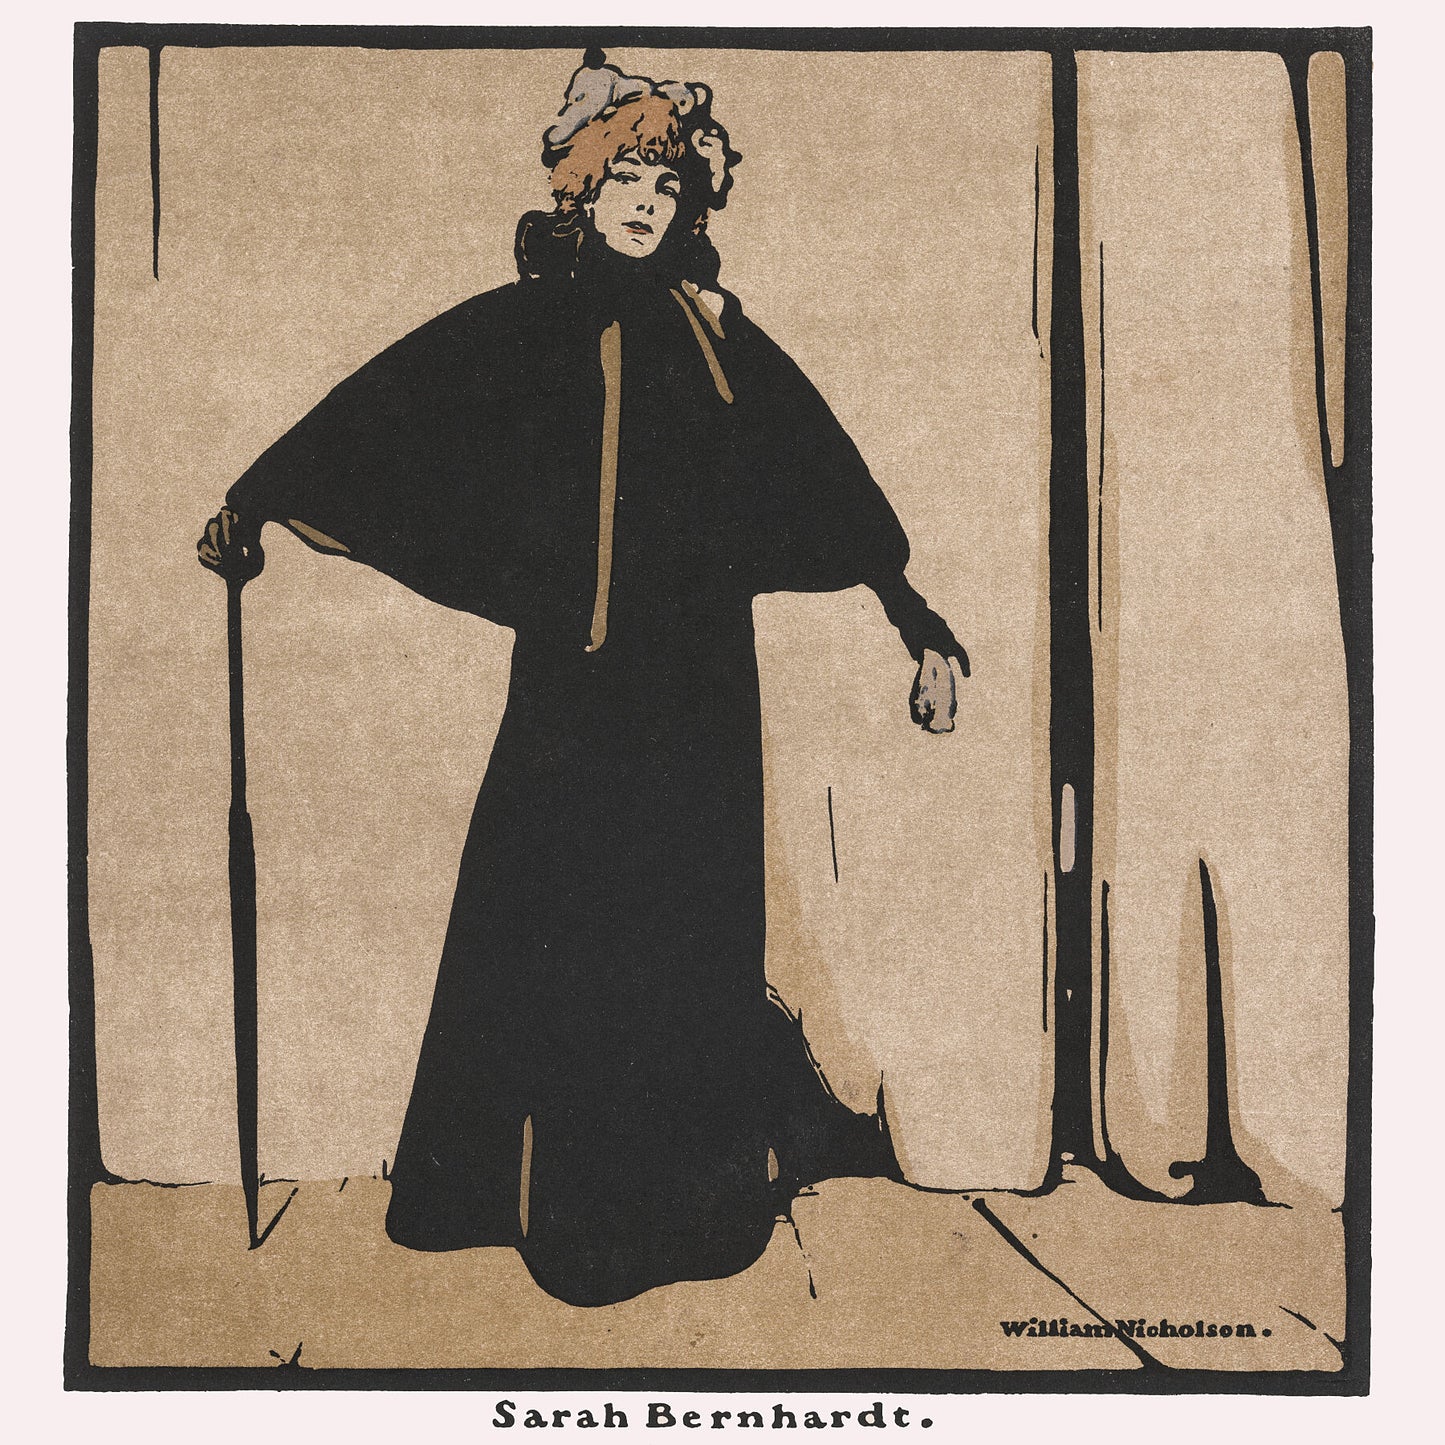 Sarah Bernhardt in 1899 by William Nicholson (British, 1872-1949)